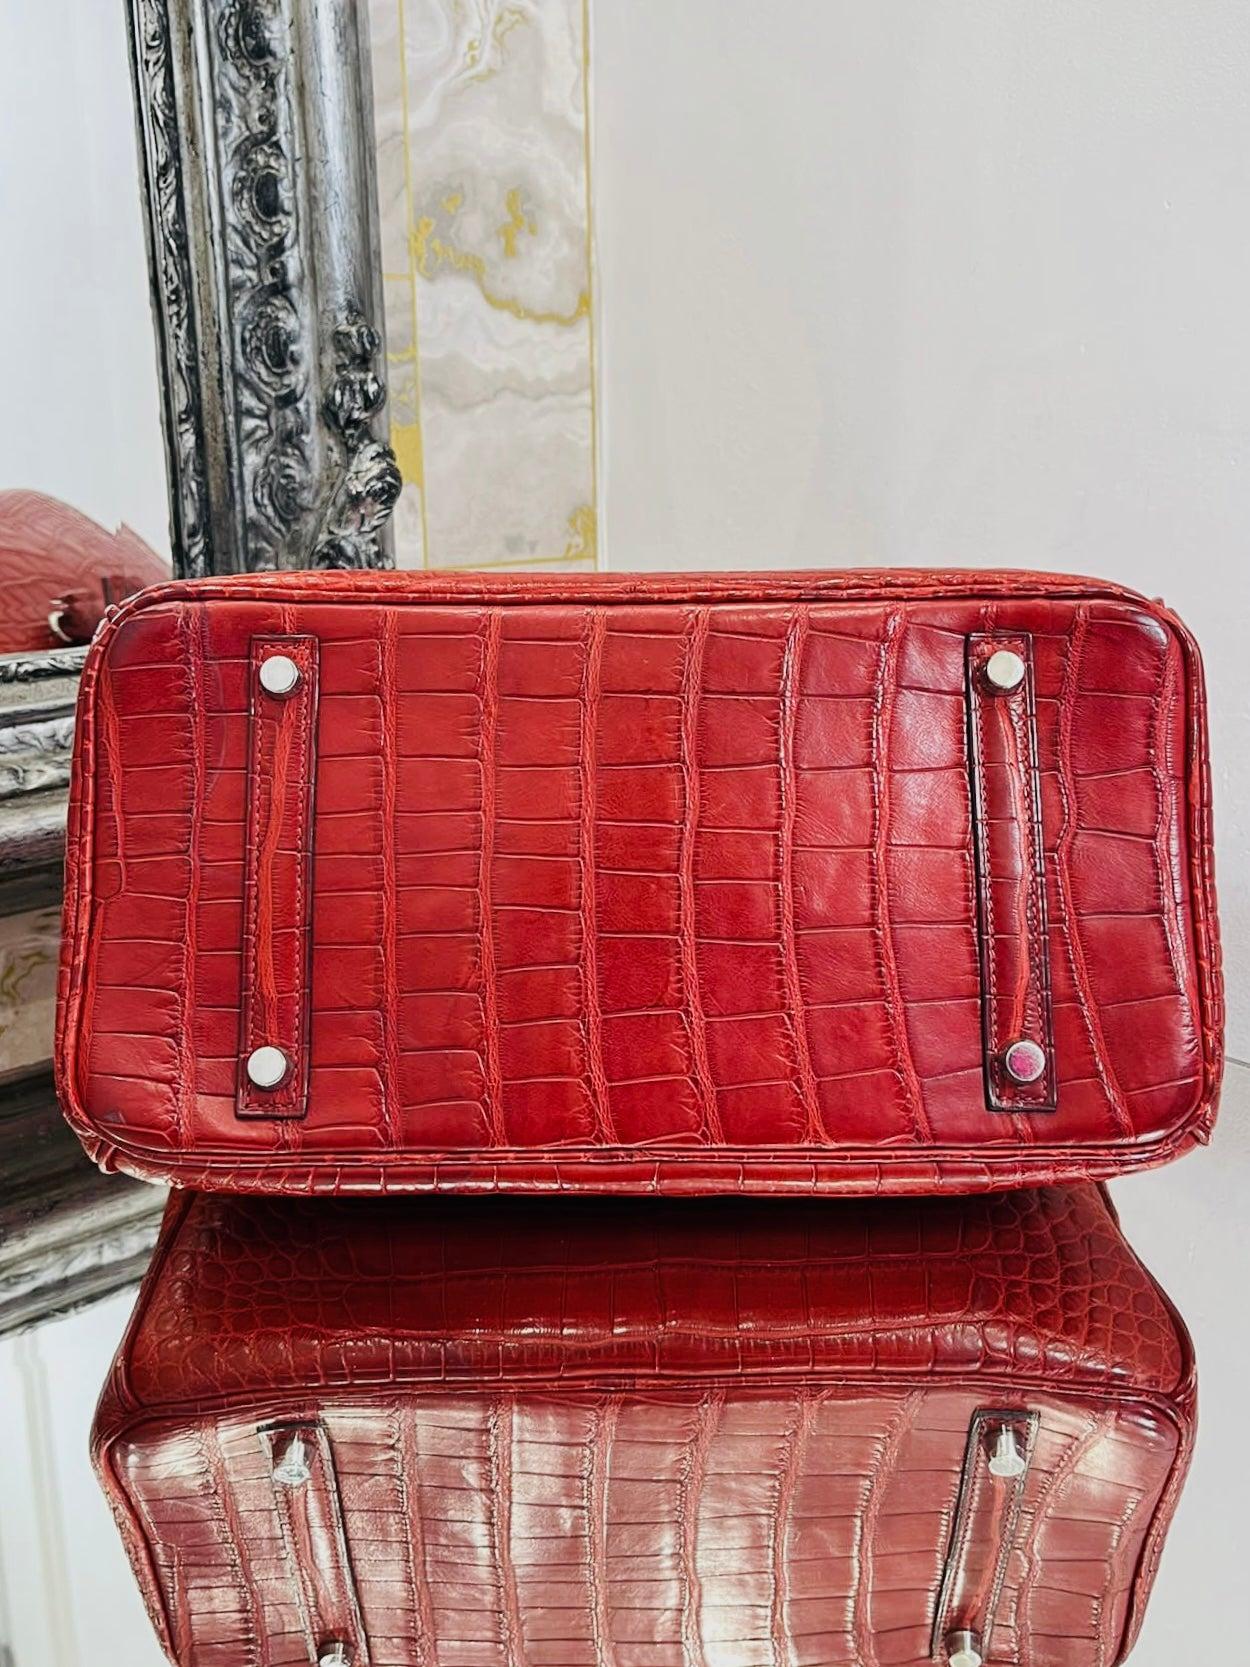 Hermes Birkin 30 Alligator Mississippiensis Skin Handbag In Good Condition For Sale In London, GB